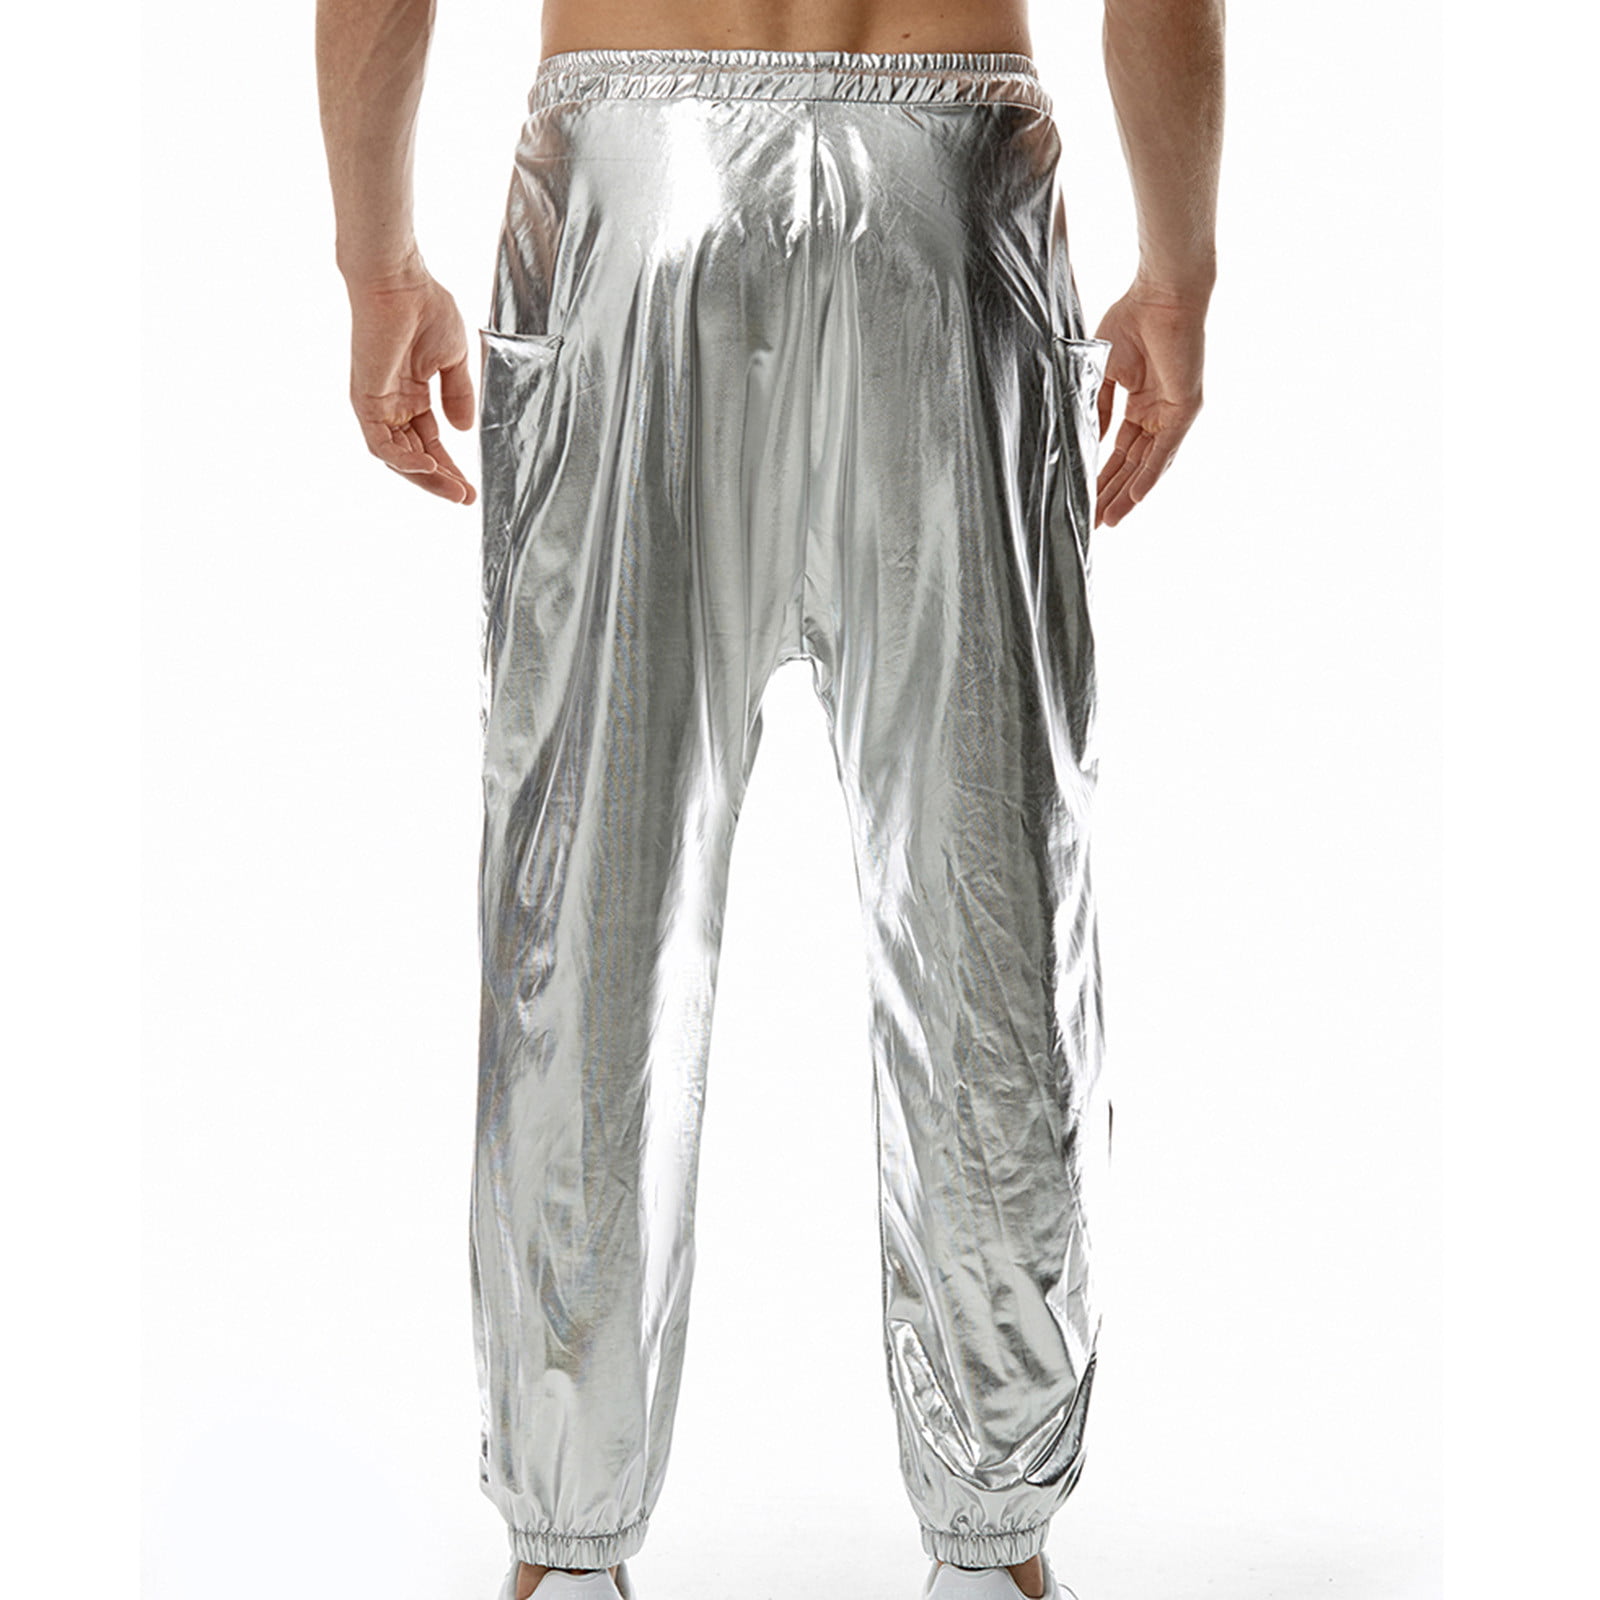 Van Heusen Men's Flex Straight Fit Flat Front Pant, Silver Grey, 40W x 34L  - Walmart.com